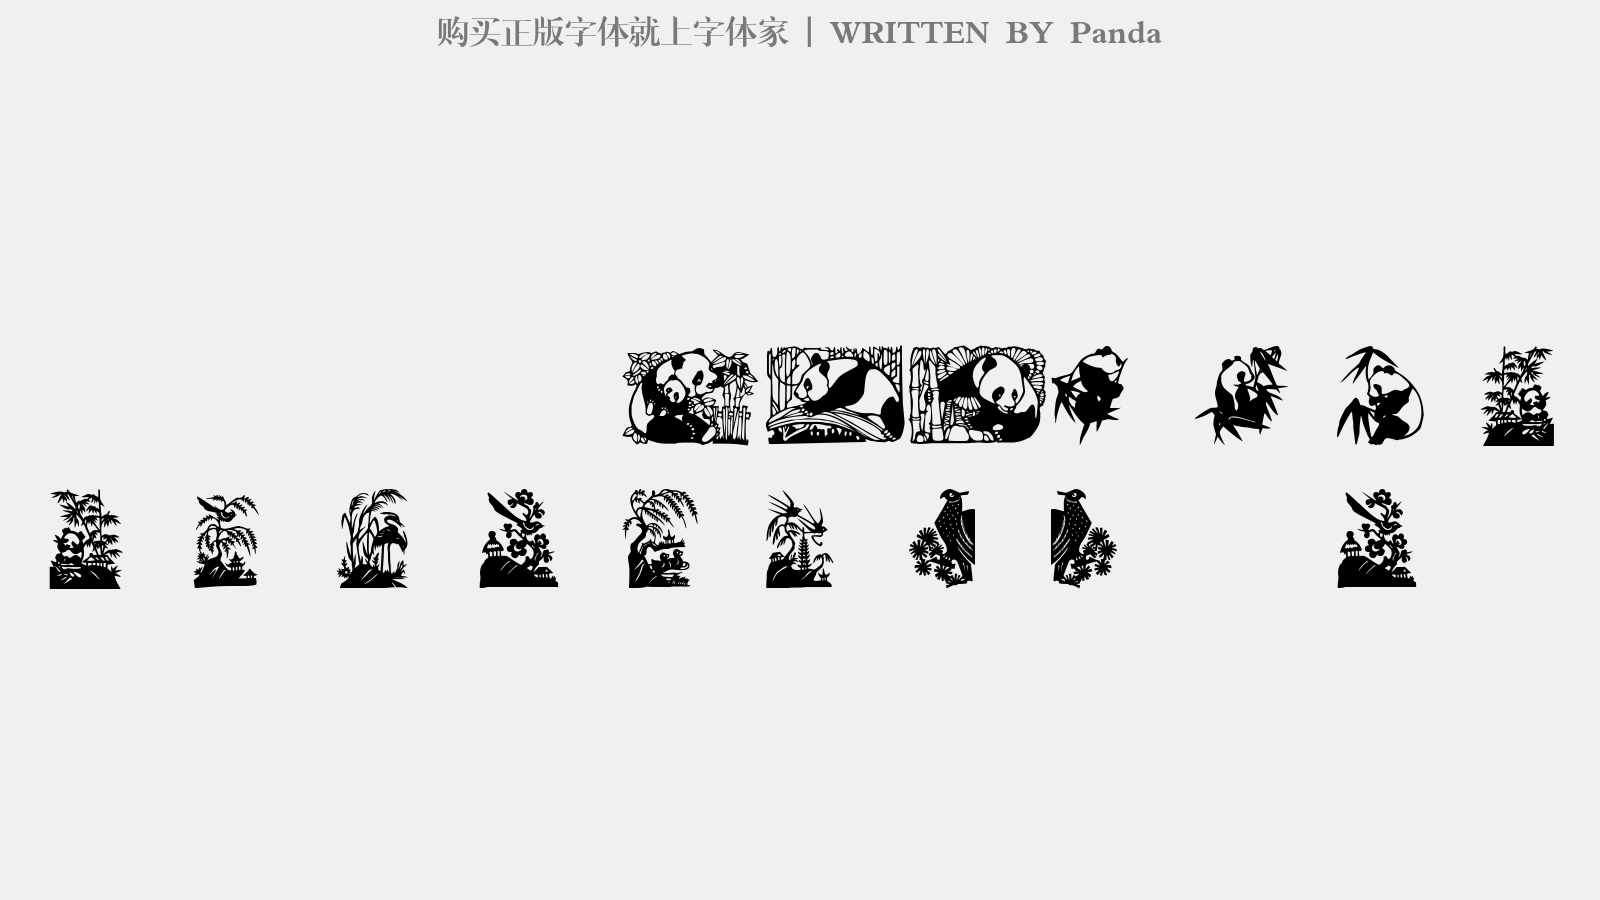 Panda - 大写字母/小写字母/数字